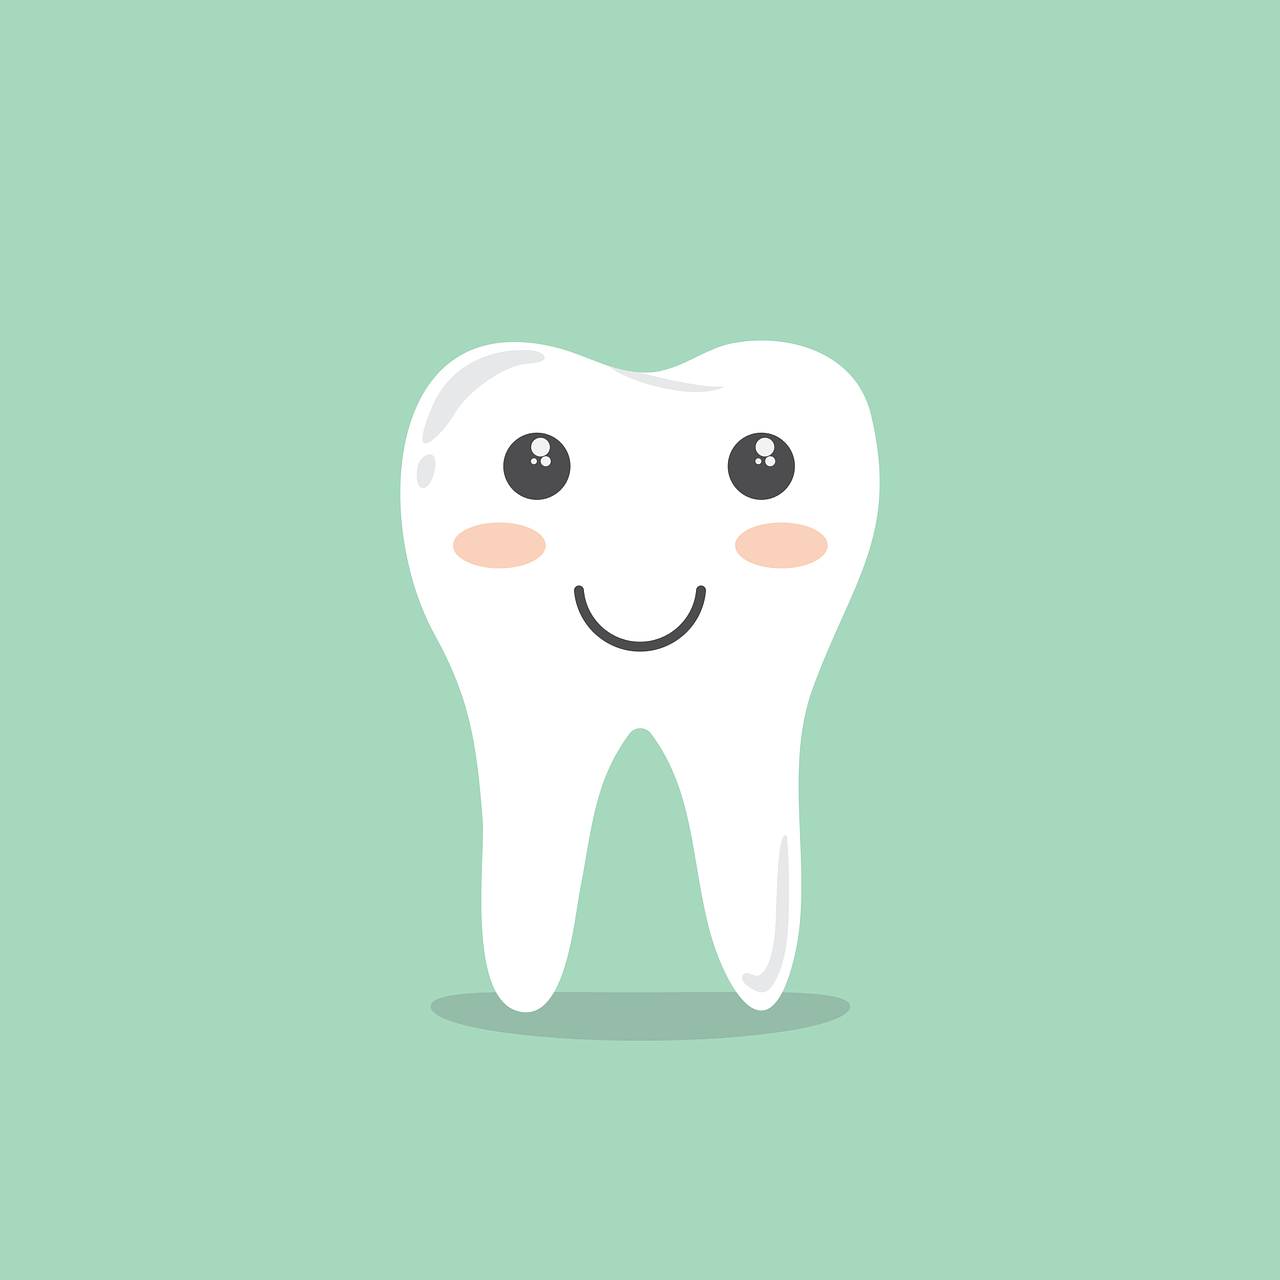 Leczenie zębów bez bólu! Bezbolesne leczenie zębów – stomatolog Warszawa Żoliborz